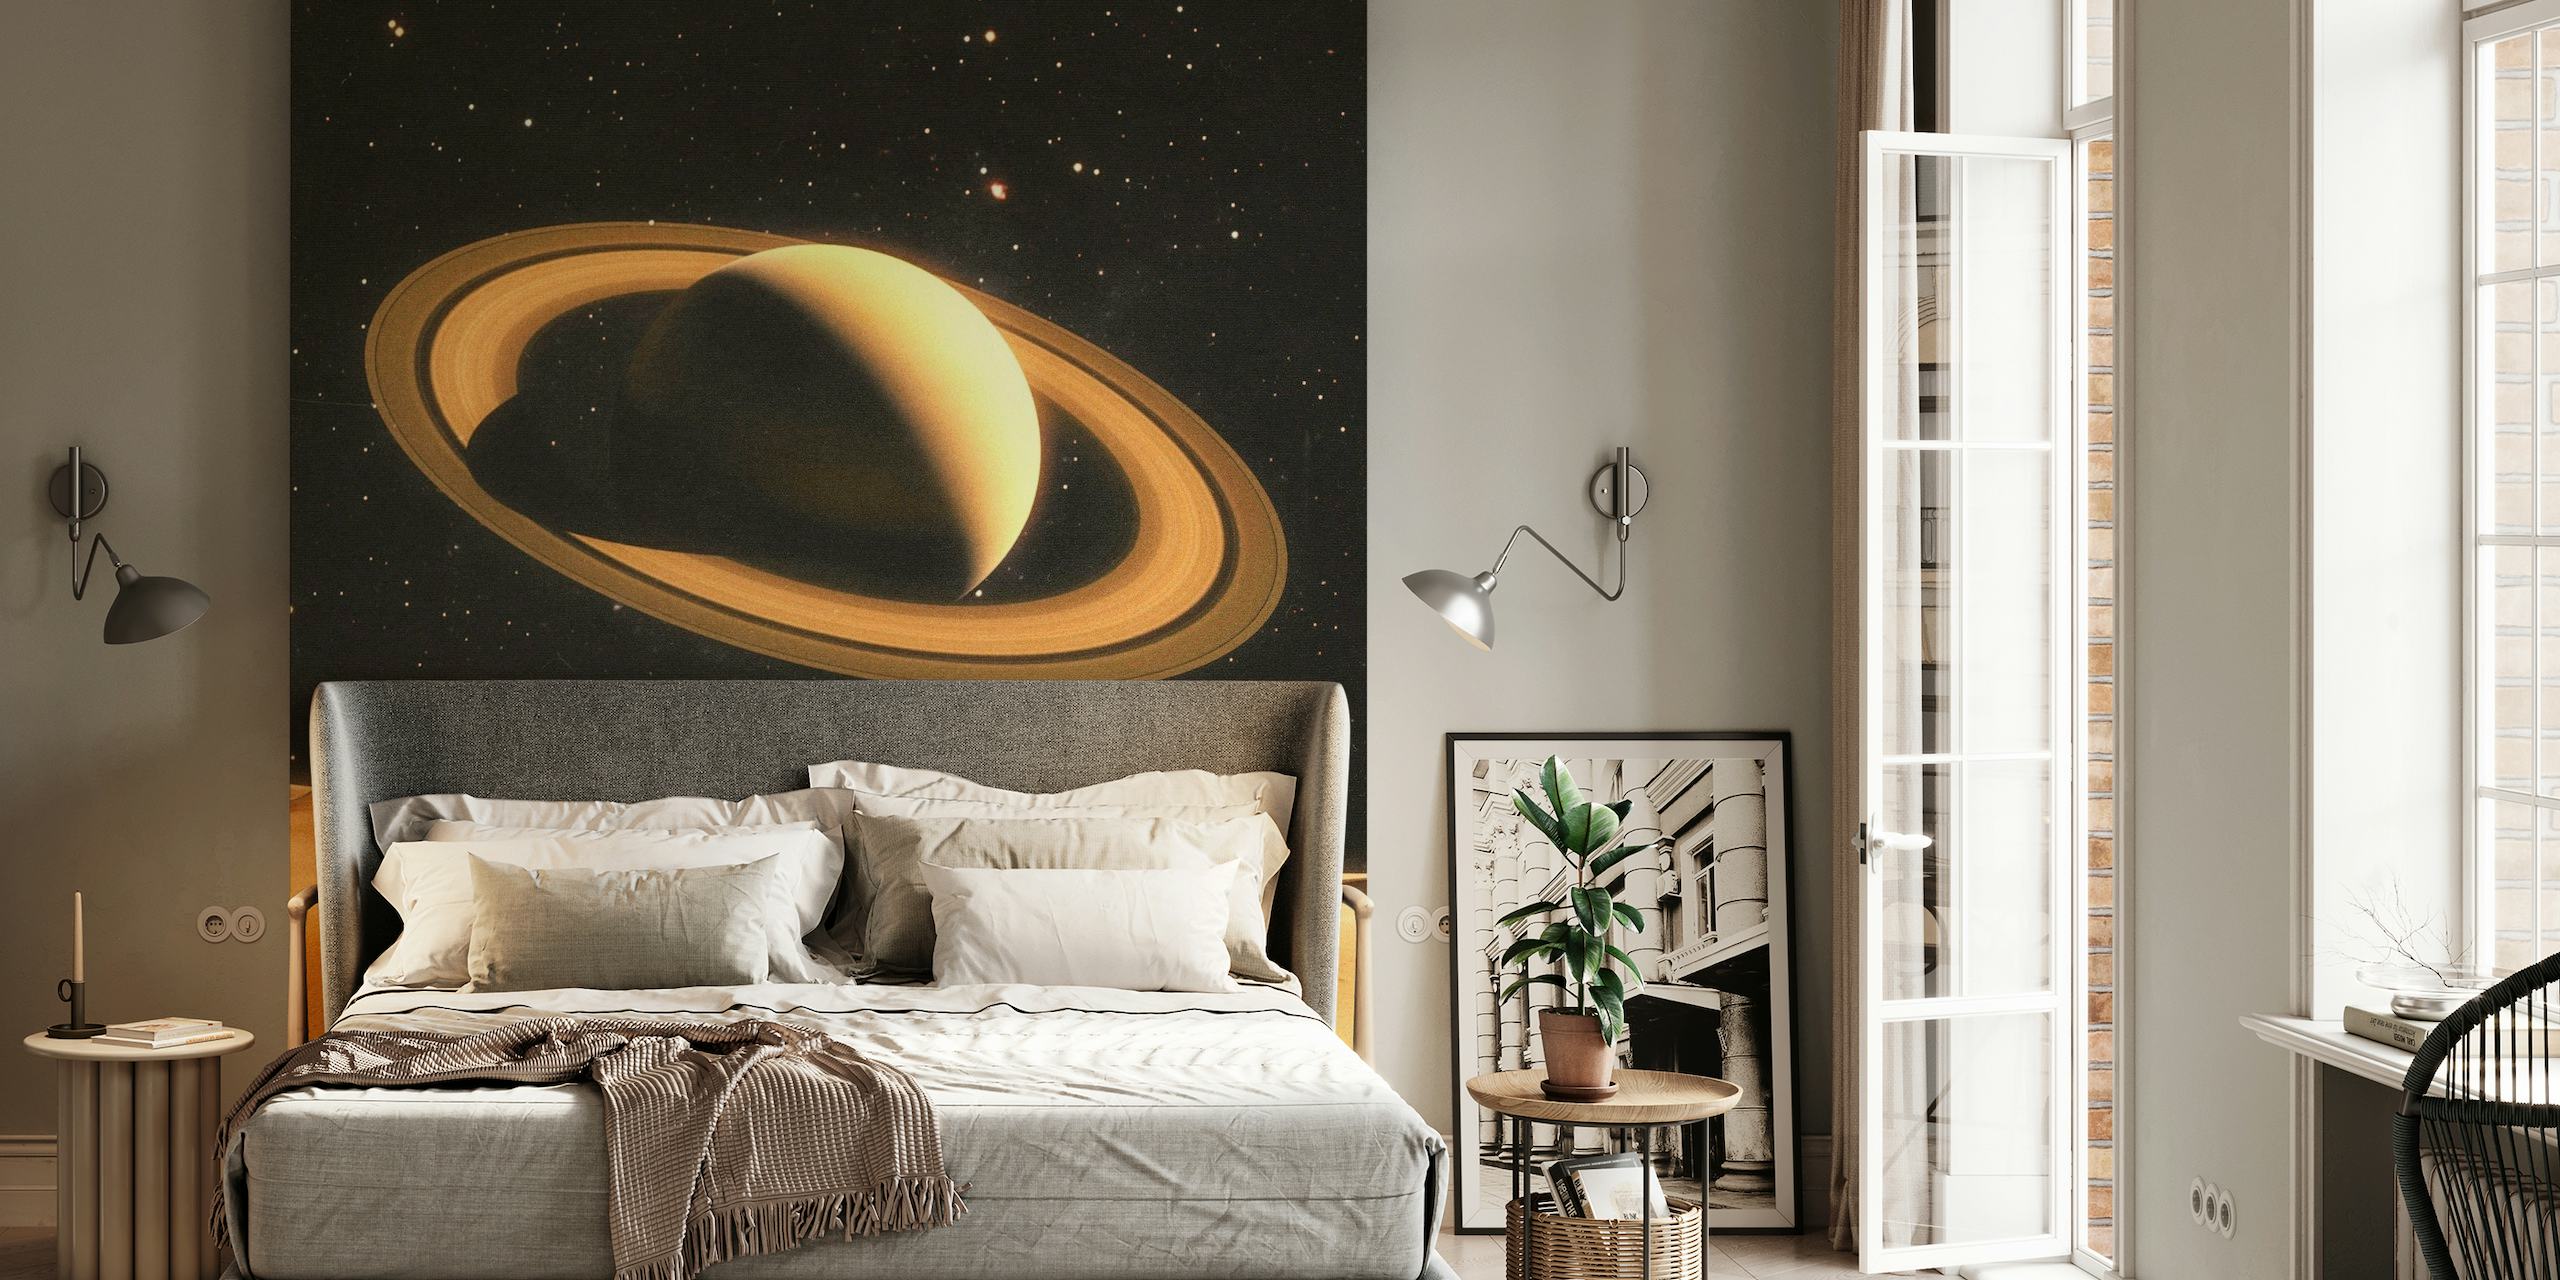 Fototapet av två personer på en ökenliknande planet med Saturnus i bakgrunden